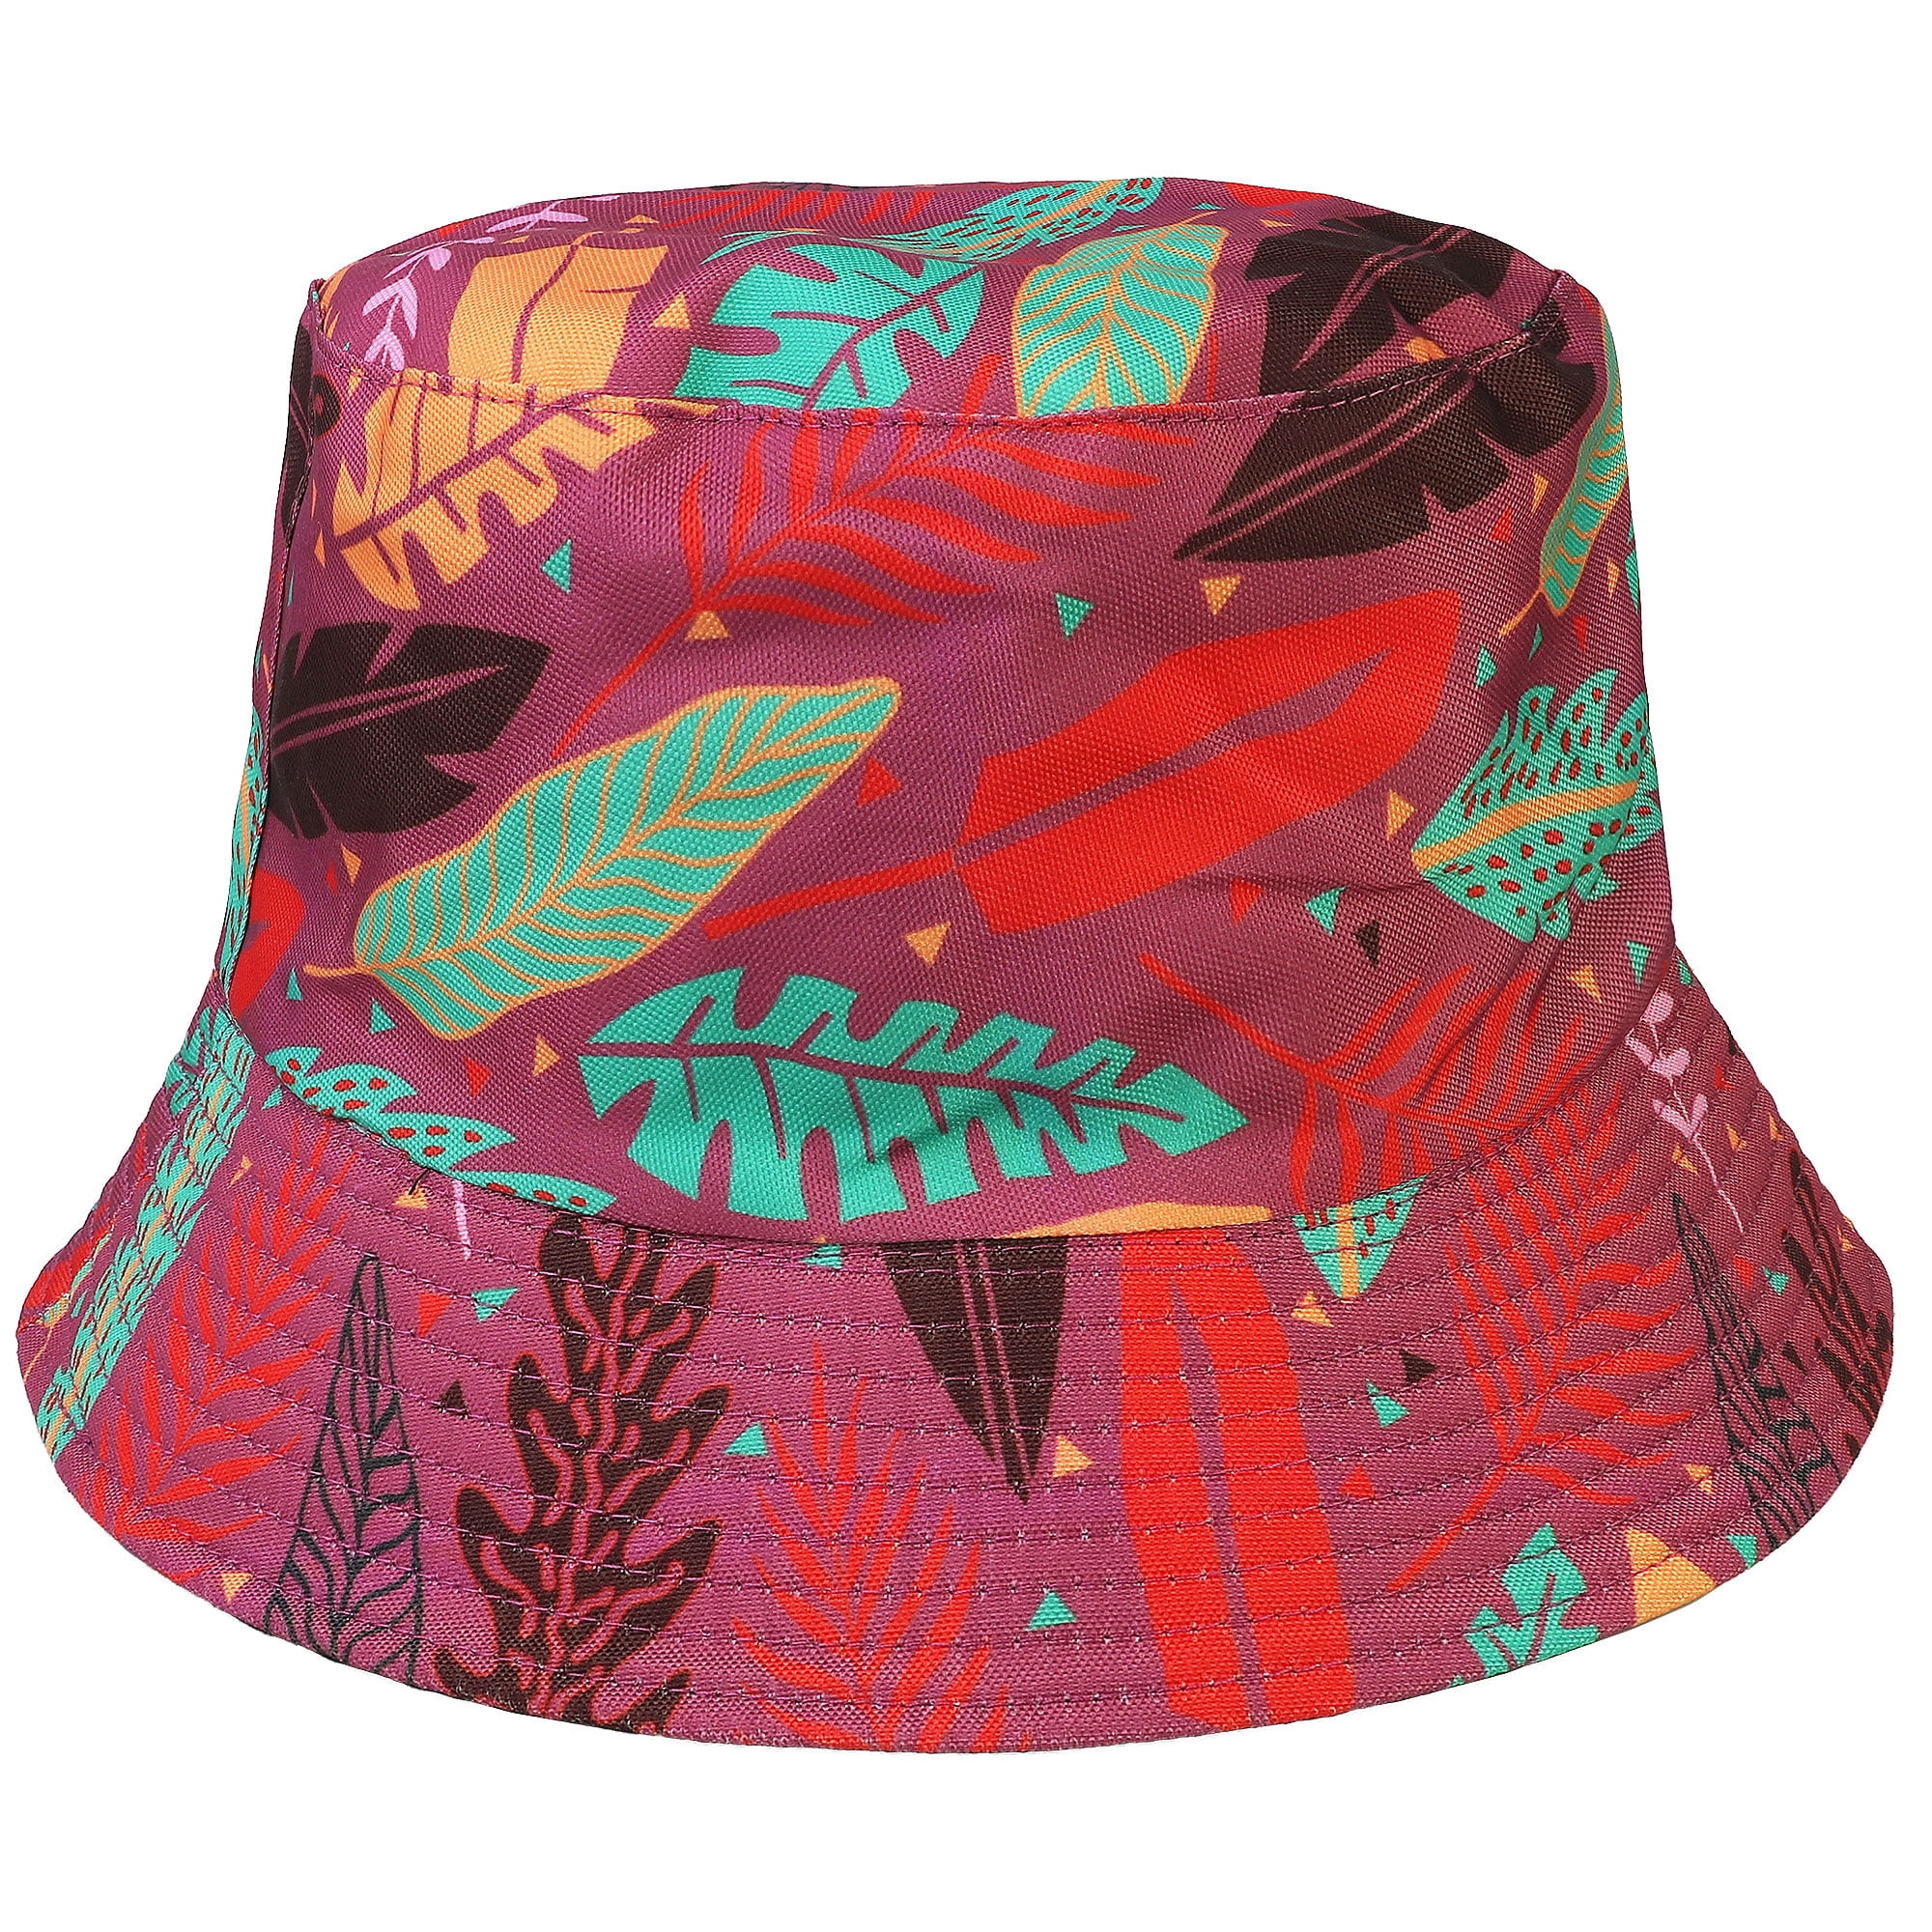 Reversible Bucket Hat For Men Women Summer Travel Beach Outdoor